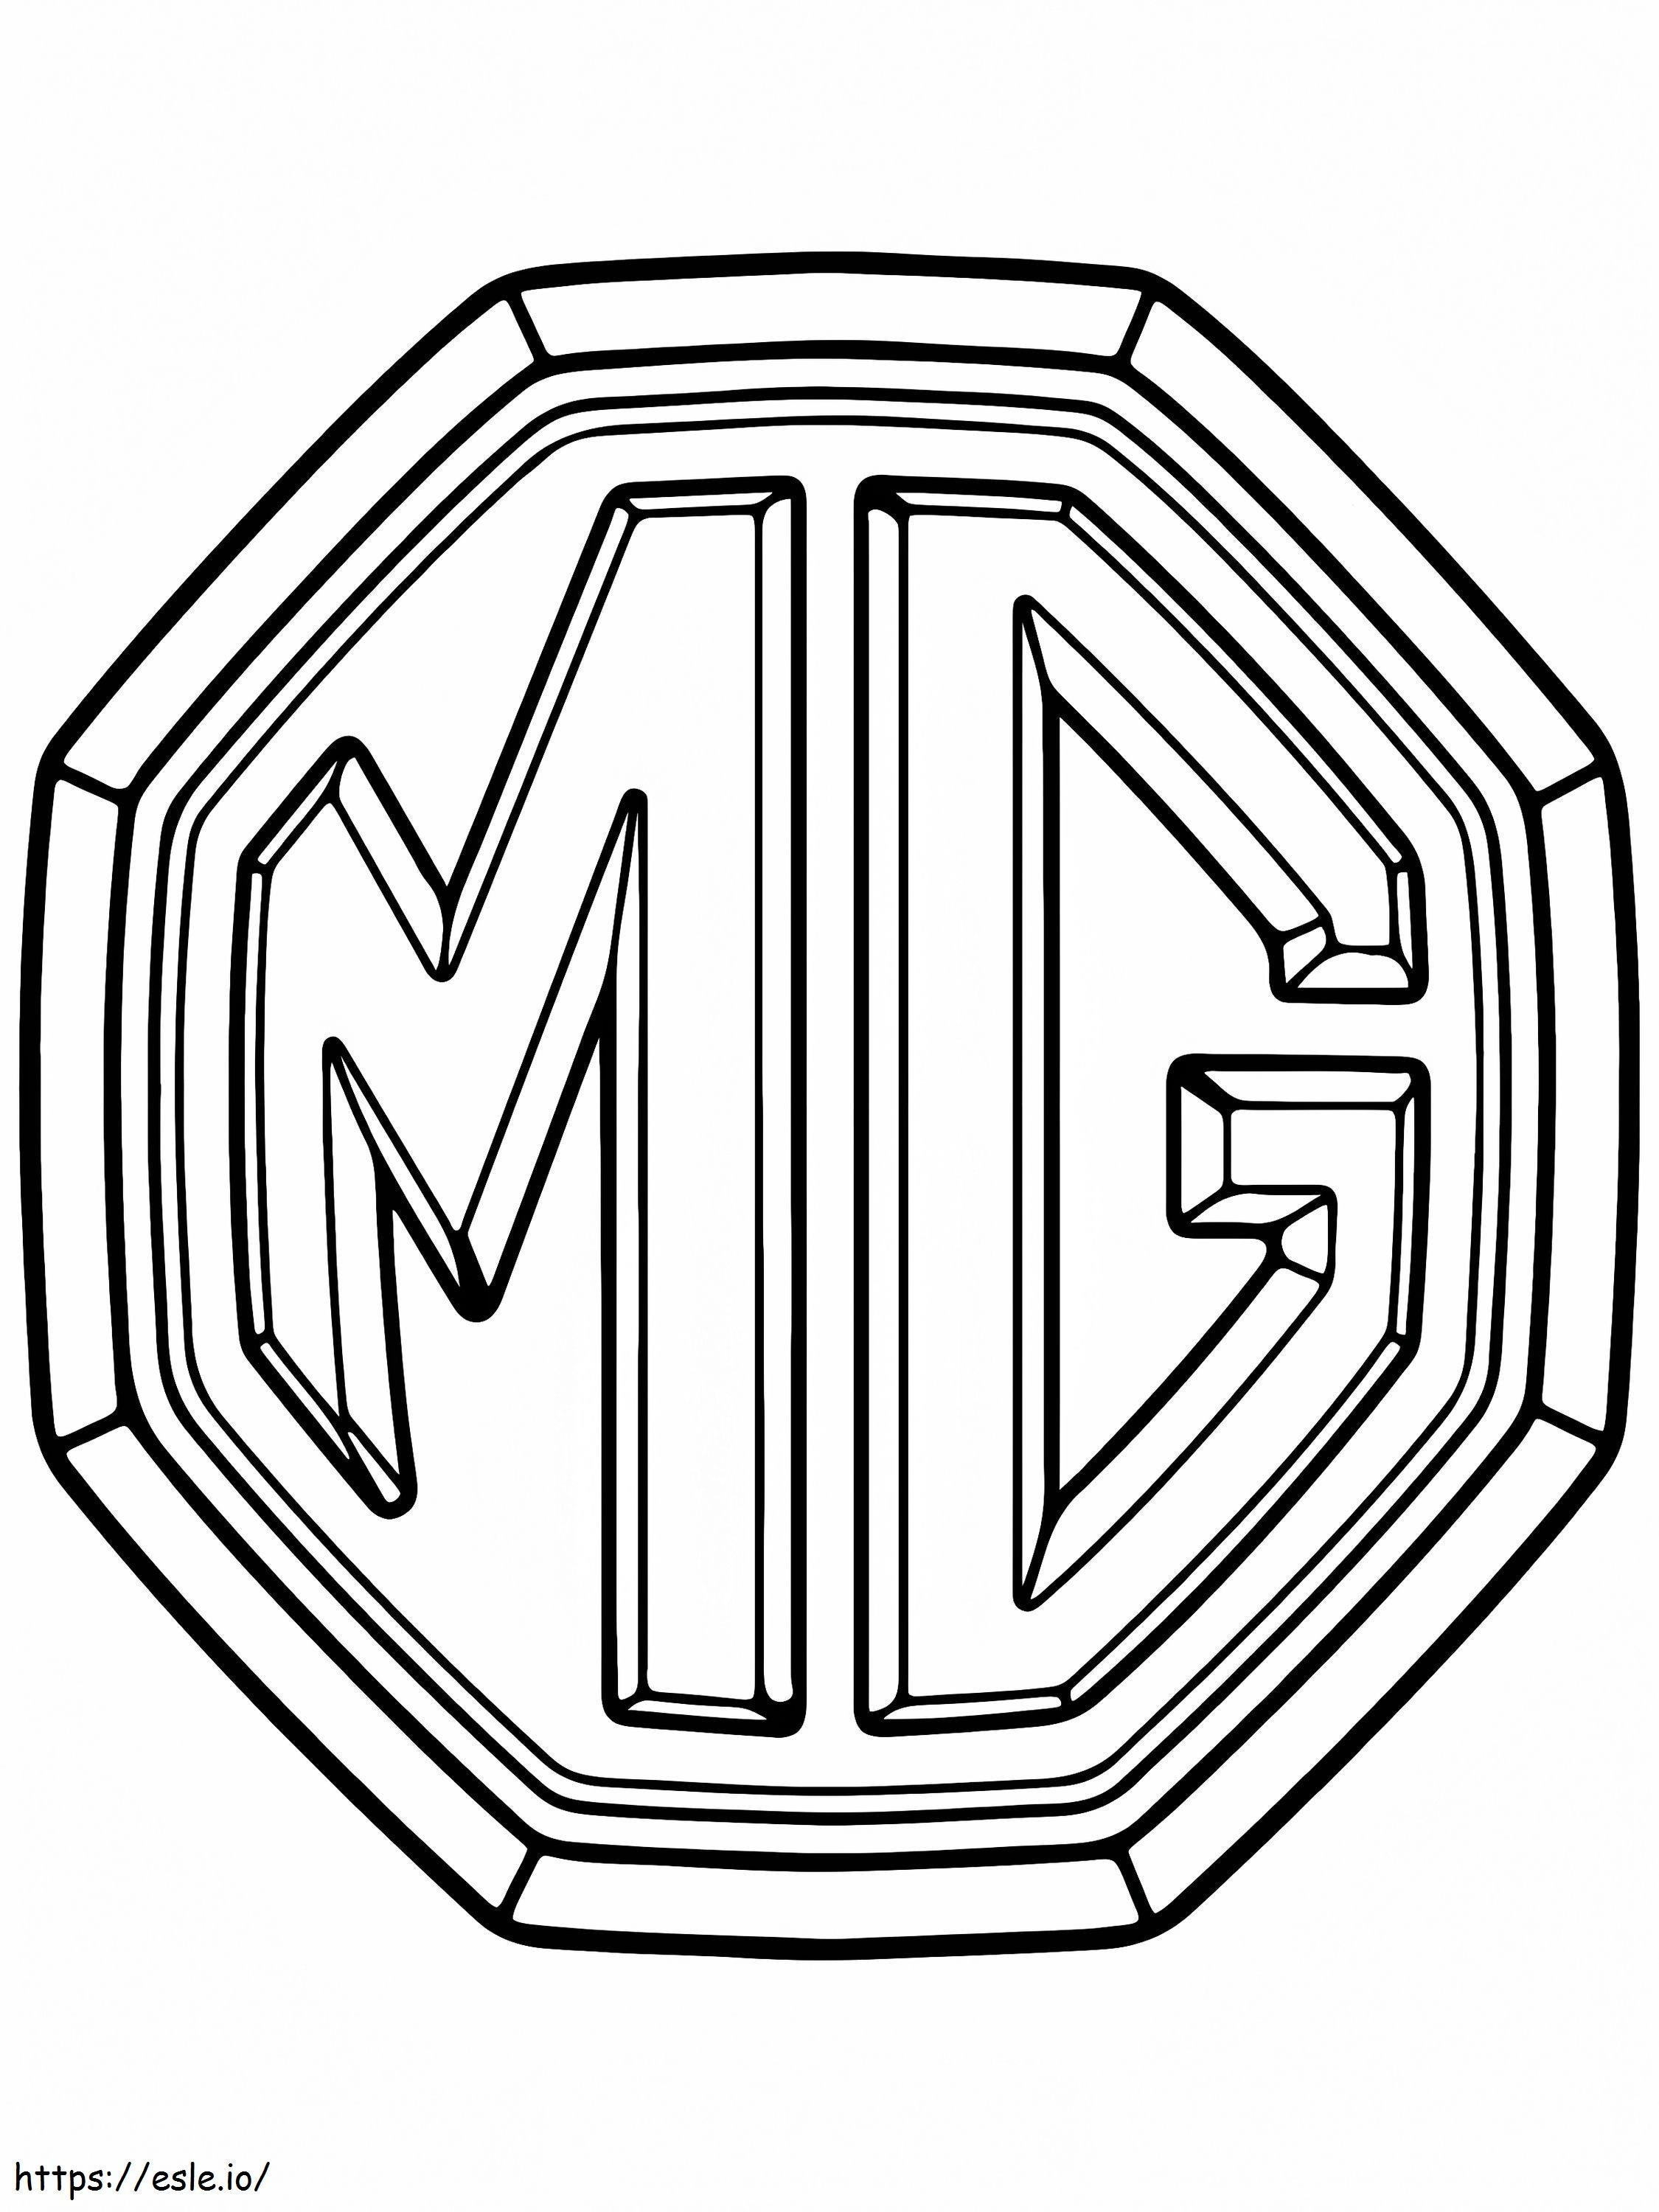 Logo dell'auto Mg da colorare